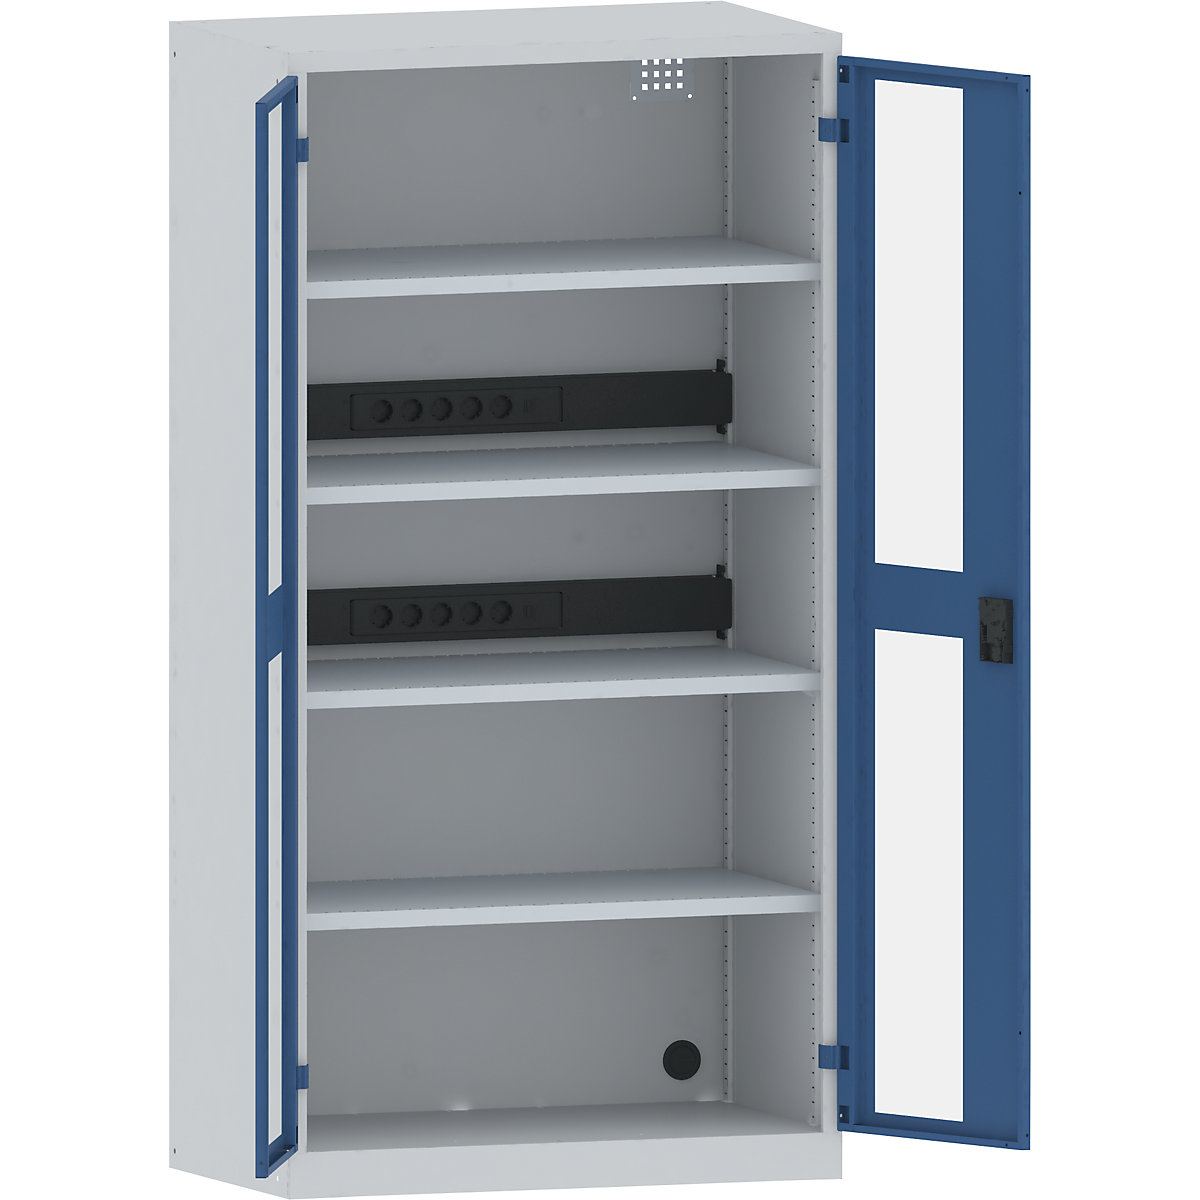 LISTA – Armario cargador de baterías, 4 baldas, puertas con ventanilla, 2 regletas de enchufes detrás, gris / azul